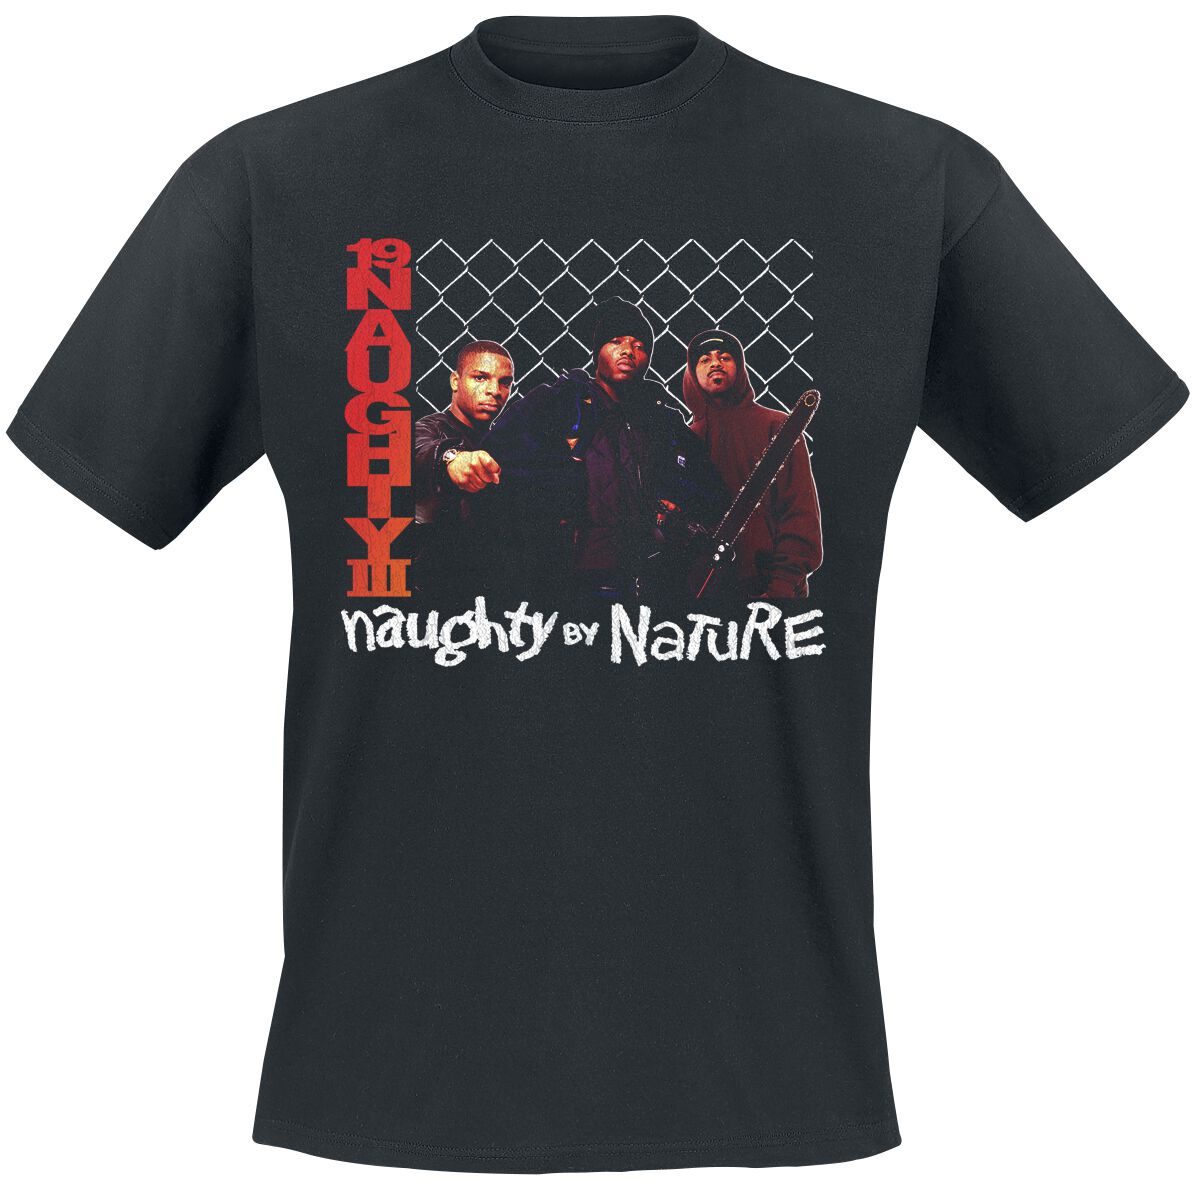 Naughty by Nature T-Shirt - 19 Naughty 111 - S bis 3XL - für Männer - Größe XXL - schwarz  - Lizenziertes Merchandise!